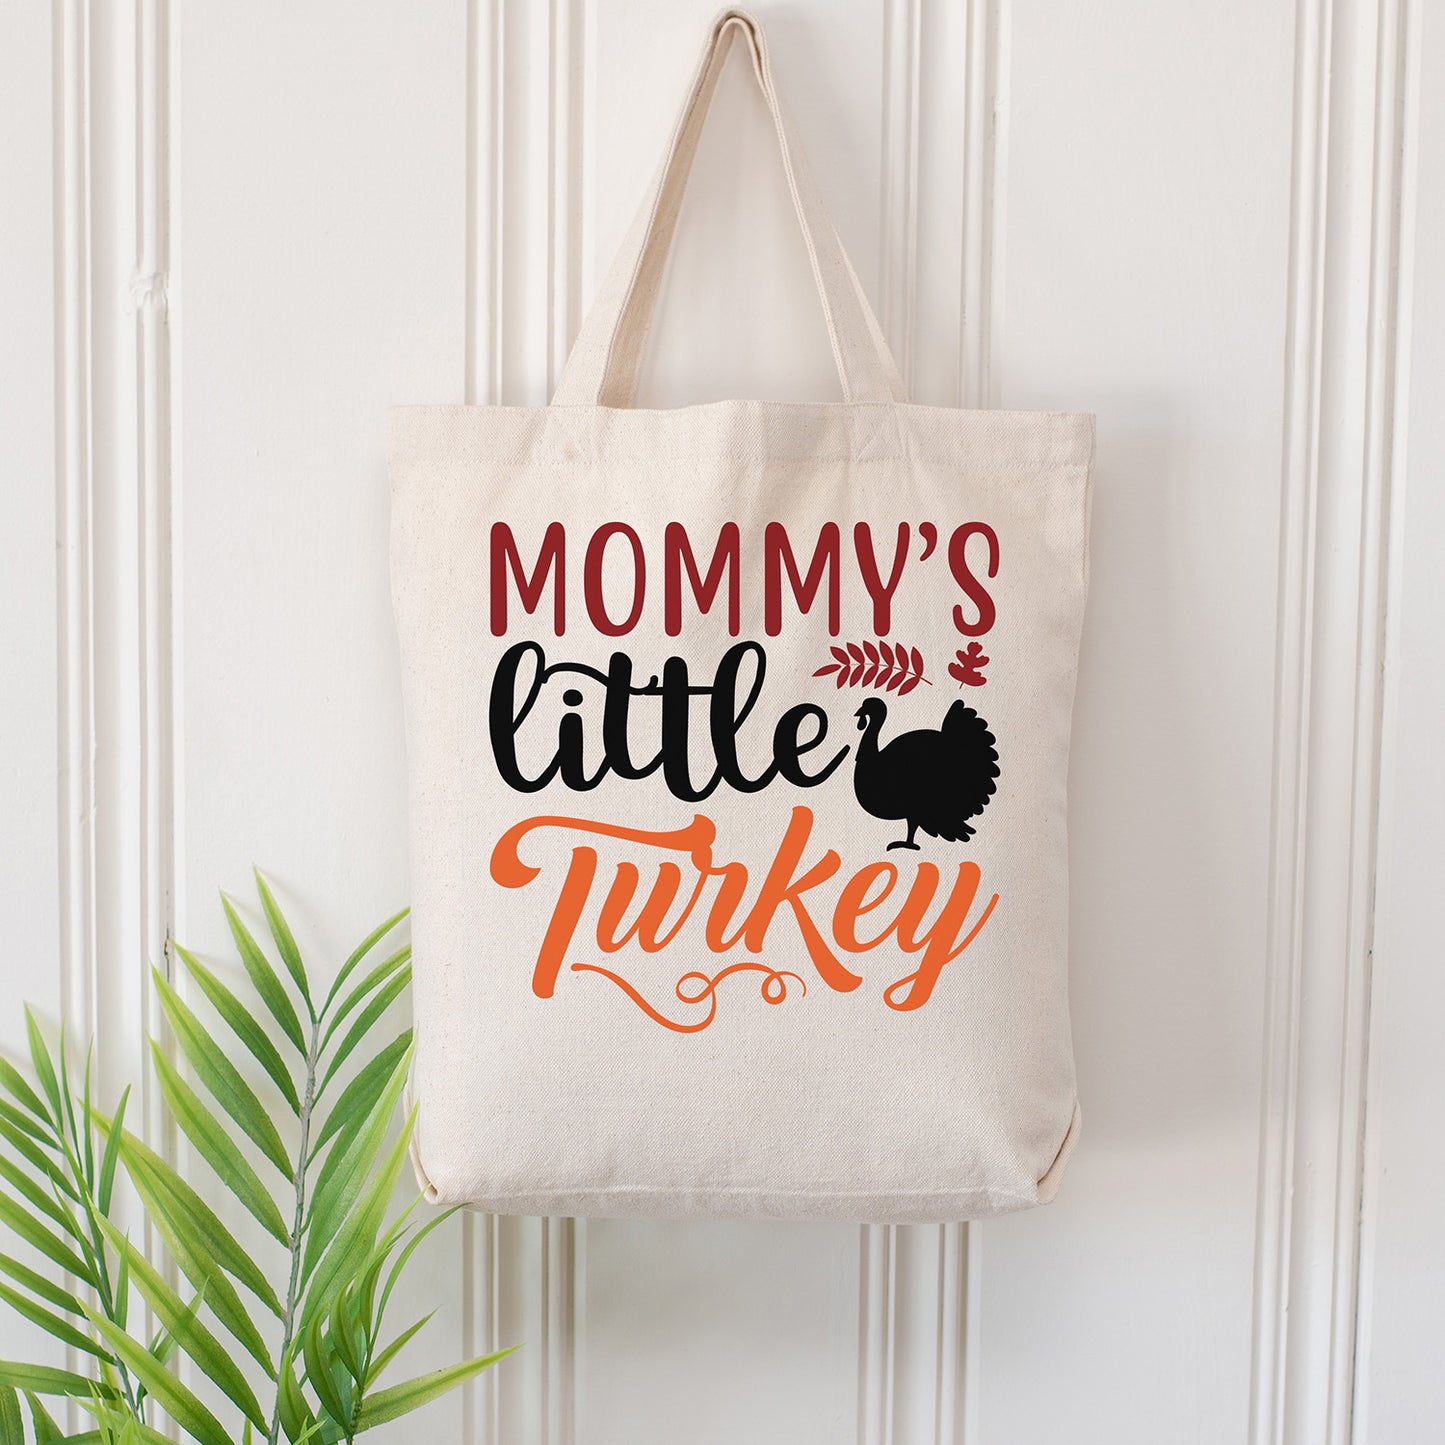 "Mommy's Little Turkey" Graphic